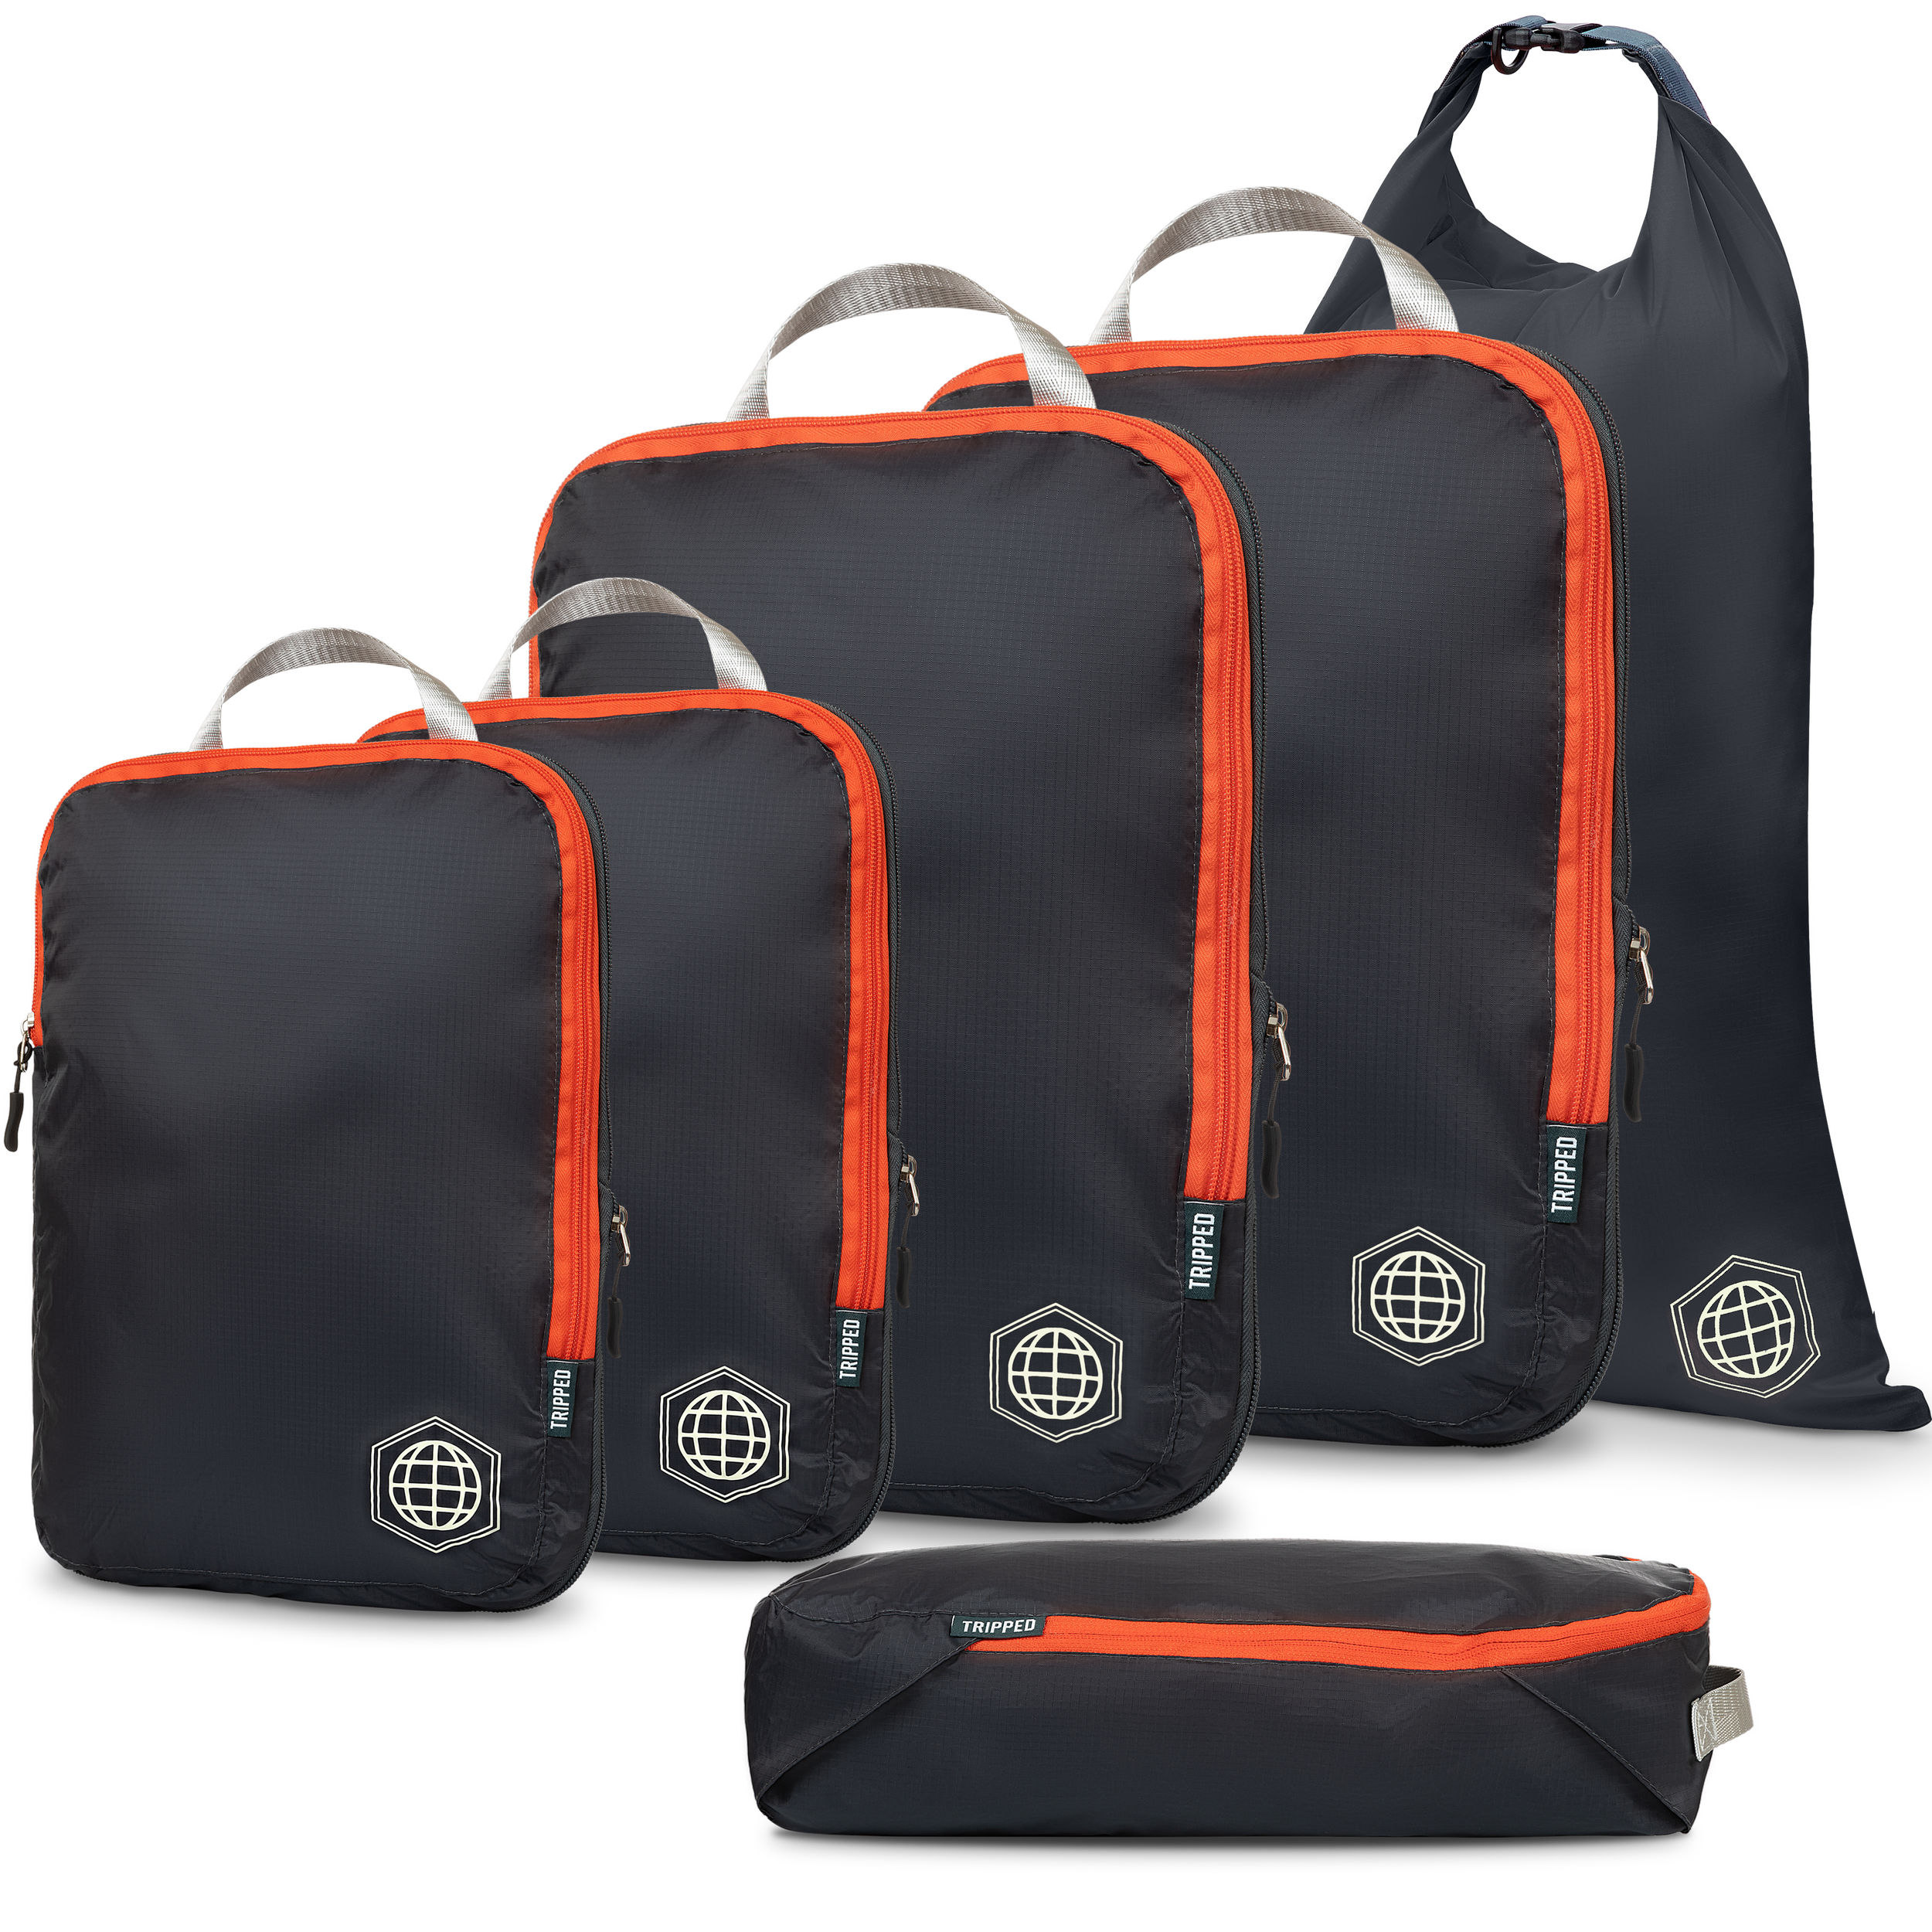 Velocity 3 in 1 Travel Bag - Black – Globe Brand US